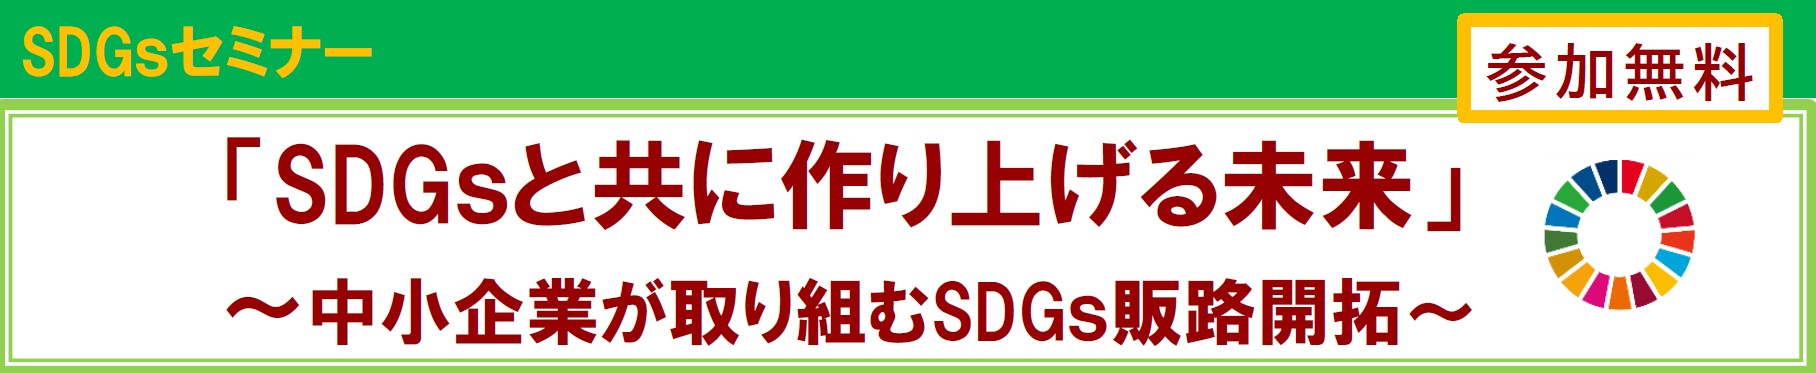 SGDsセミナータイトル